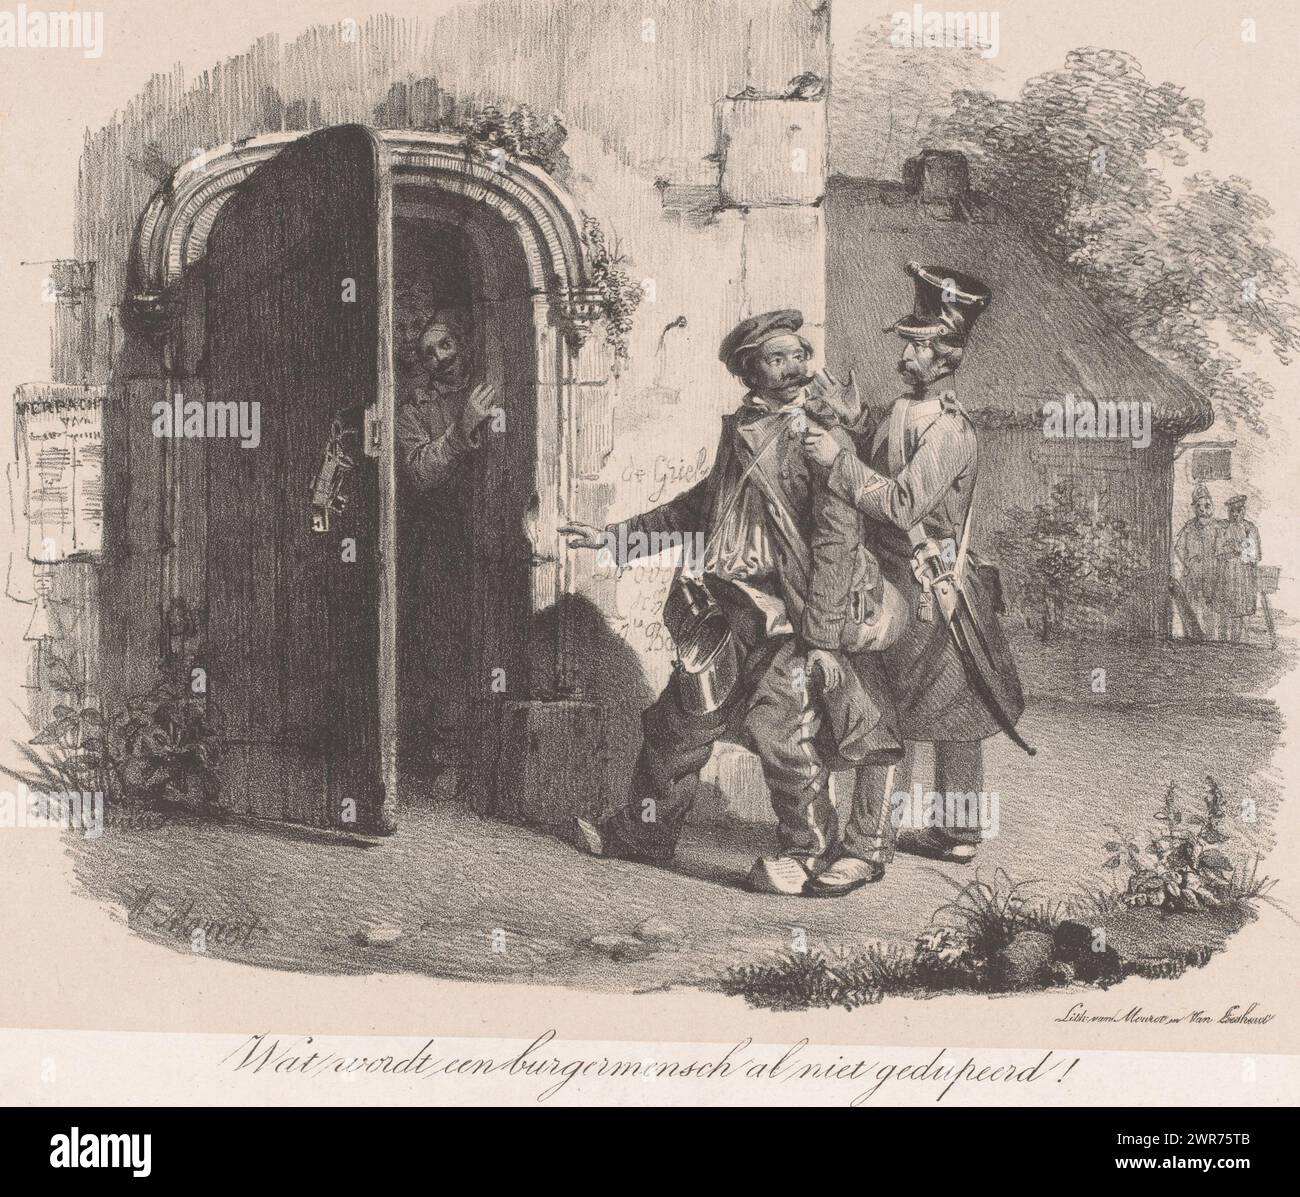 Provoost arresta il soldato, De Provoost (titolo sull'oggetto), Un ufficiale di alto rango arresta un soldato dall'aspetto sciocco in zoccoli. Lo guida verso una torre dove due figure si trovano all'ingresso. Sotto l'immagine c'è il sospiro del soldato: "Quanti civili vengono ingannati!". Numerato in alto a destra: N. 2., stampatore: Michel Mourot, su disegno di: Michel Mourot, stampatore: Mourot & Van Lieshout, Den Bosch, 1835 - 1838, carta, altezza 310 mm x larghezza 432 mm, stampa Foto Stock